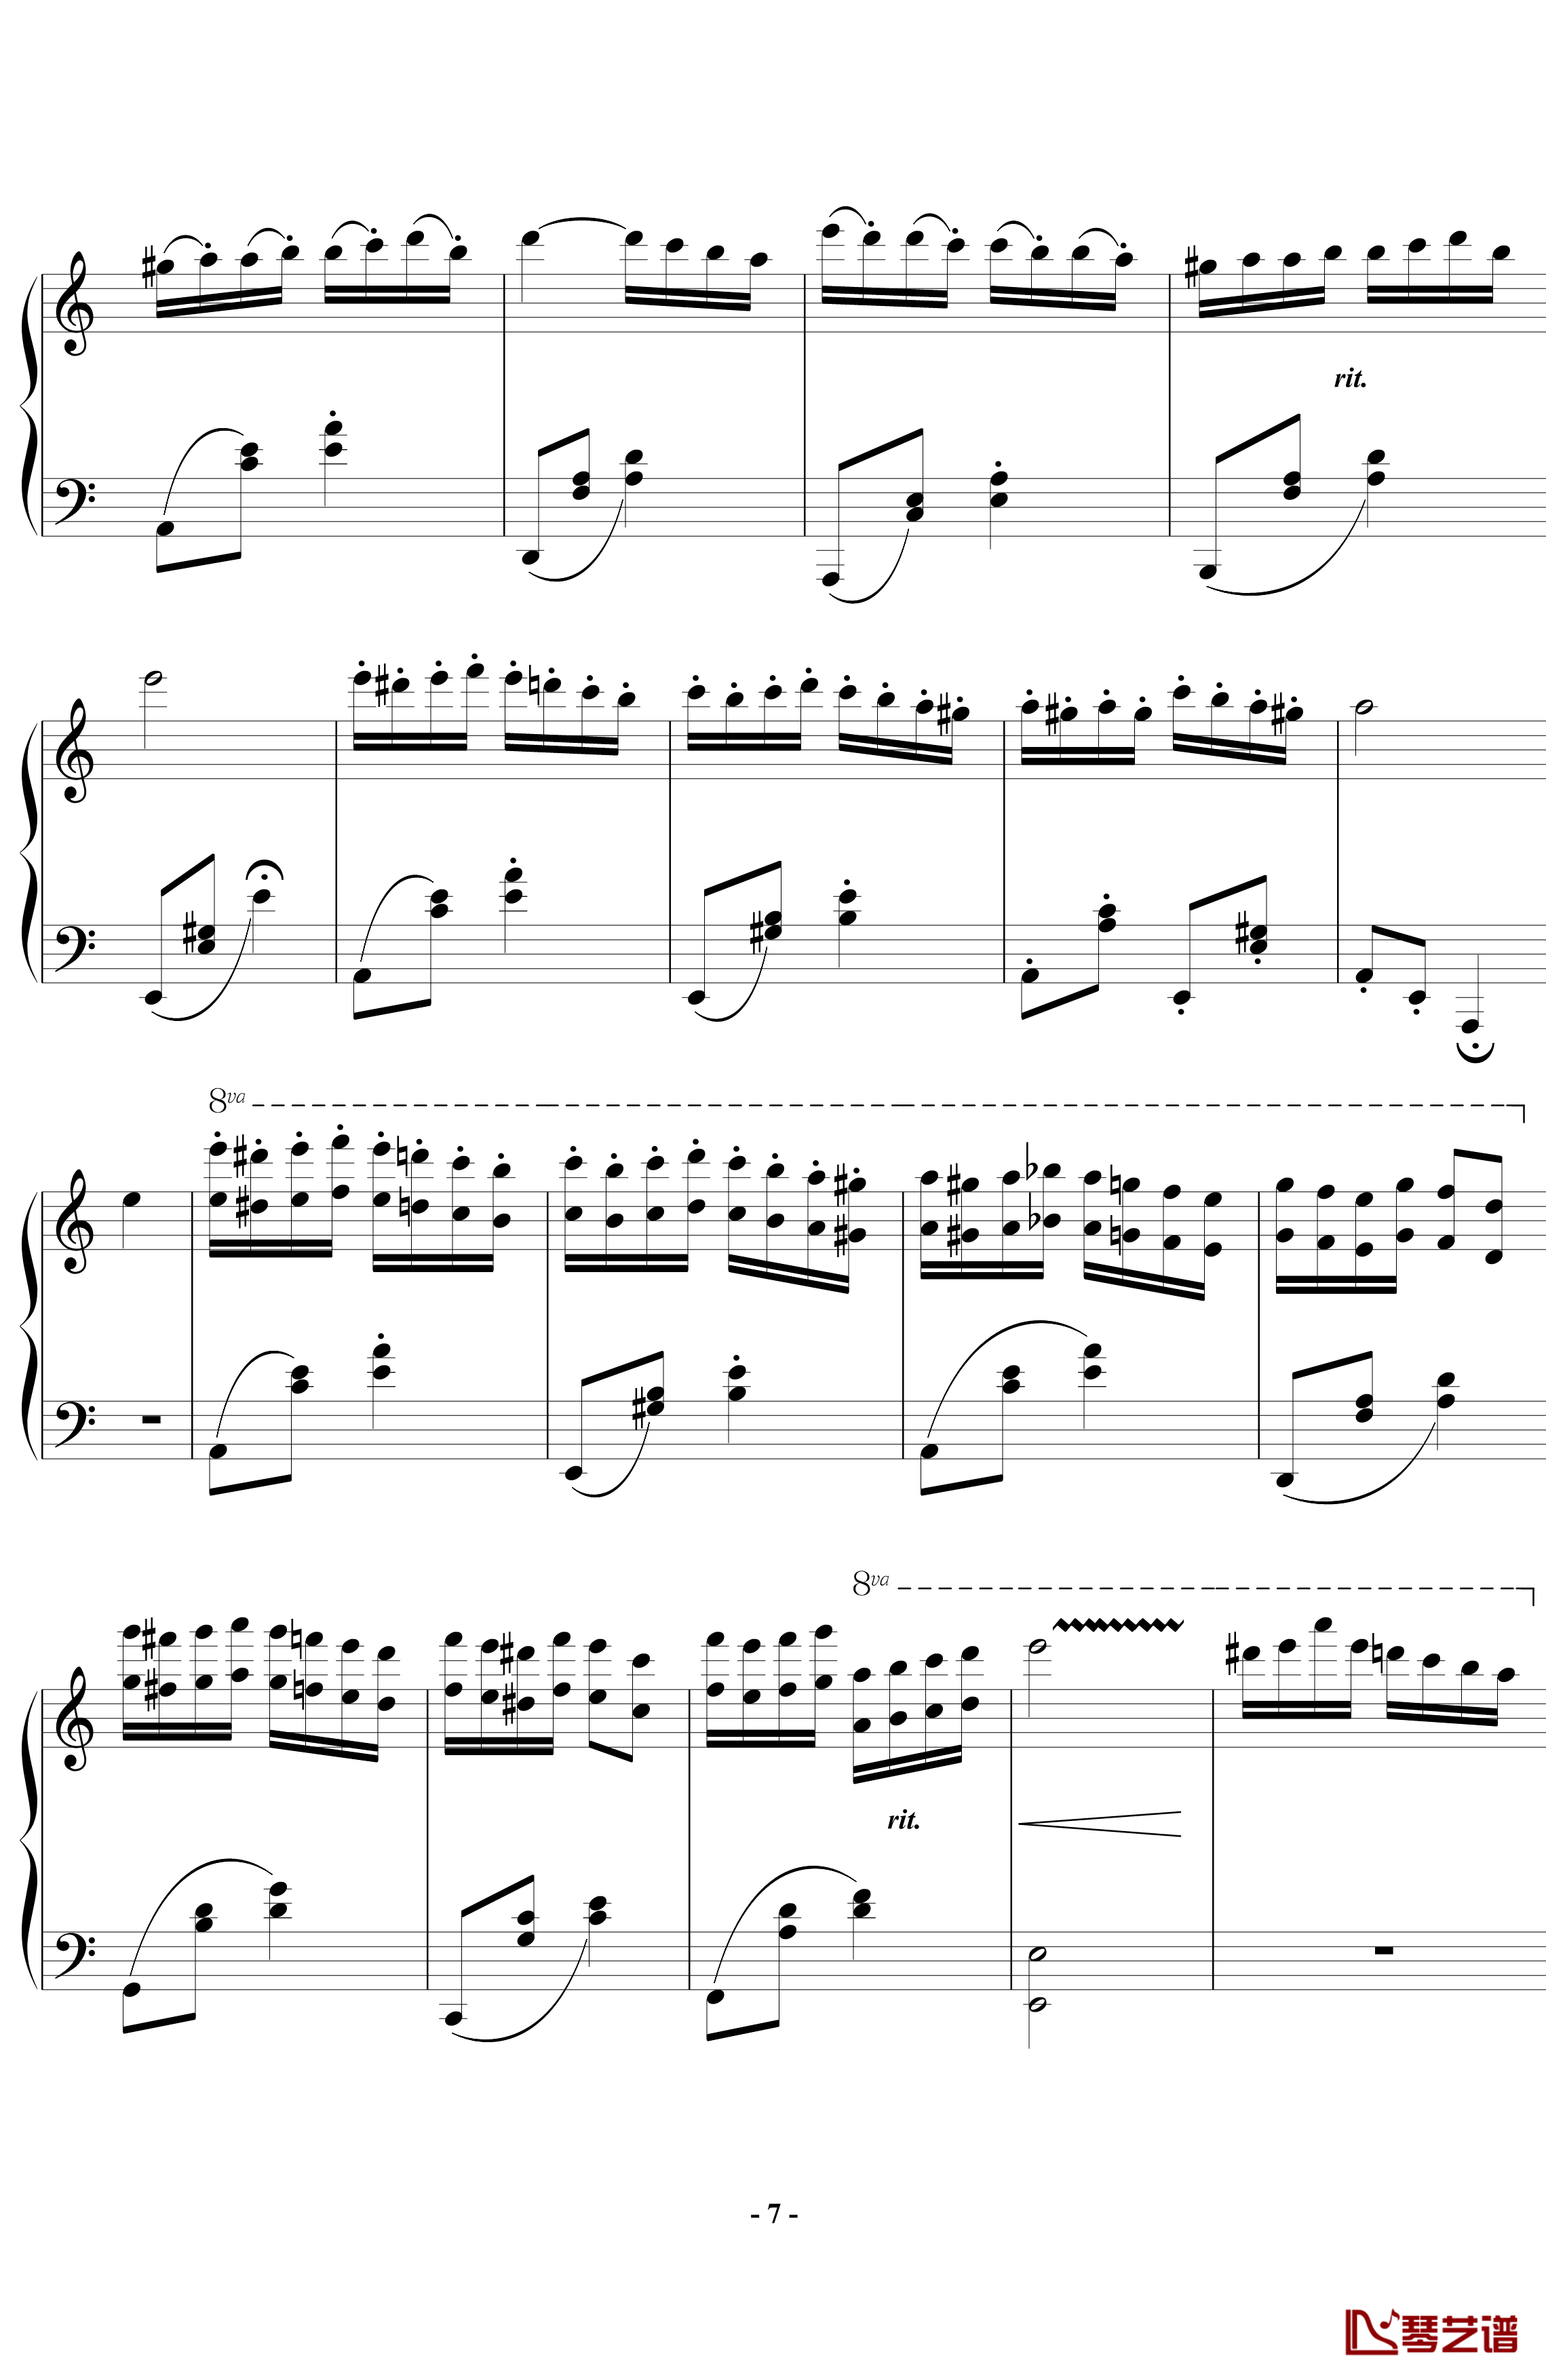 帕格尼尼飞絮曲钢琴谱-标准版-马克西姆-Maksim·Mrvica7